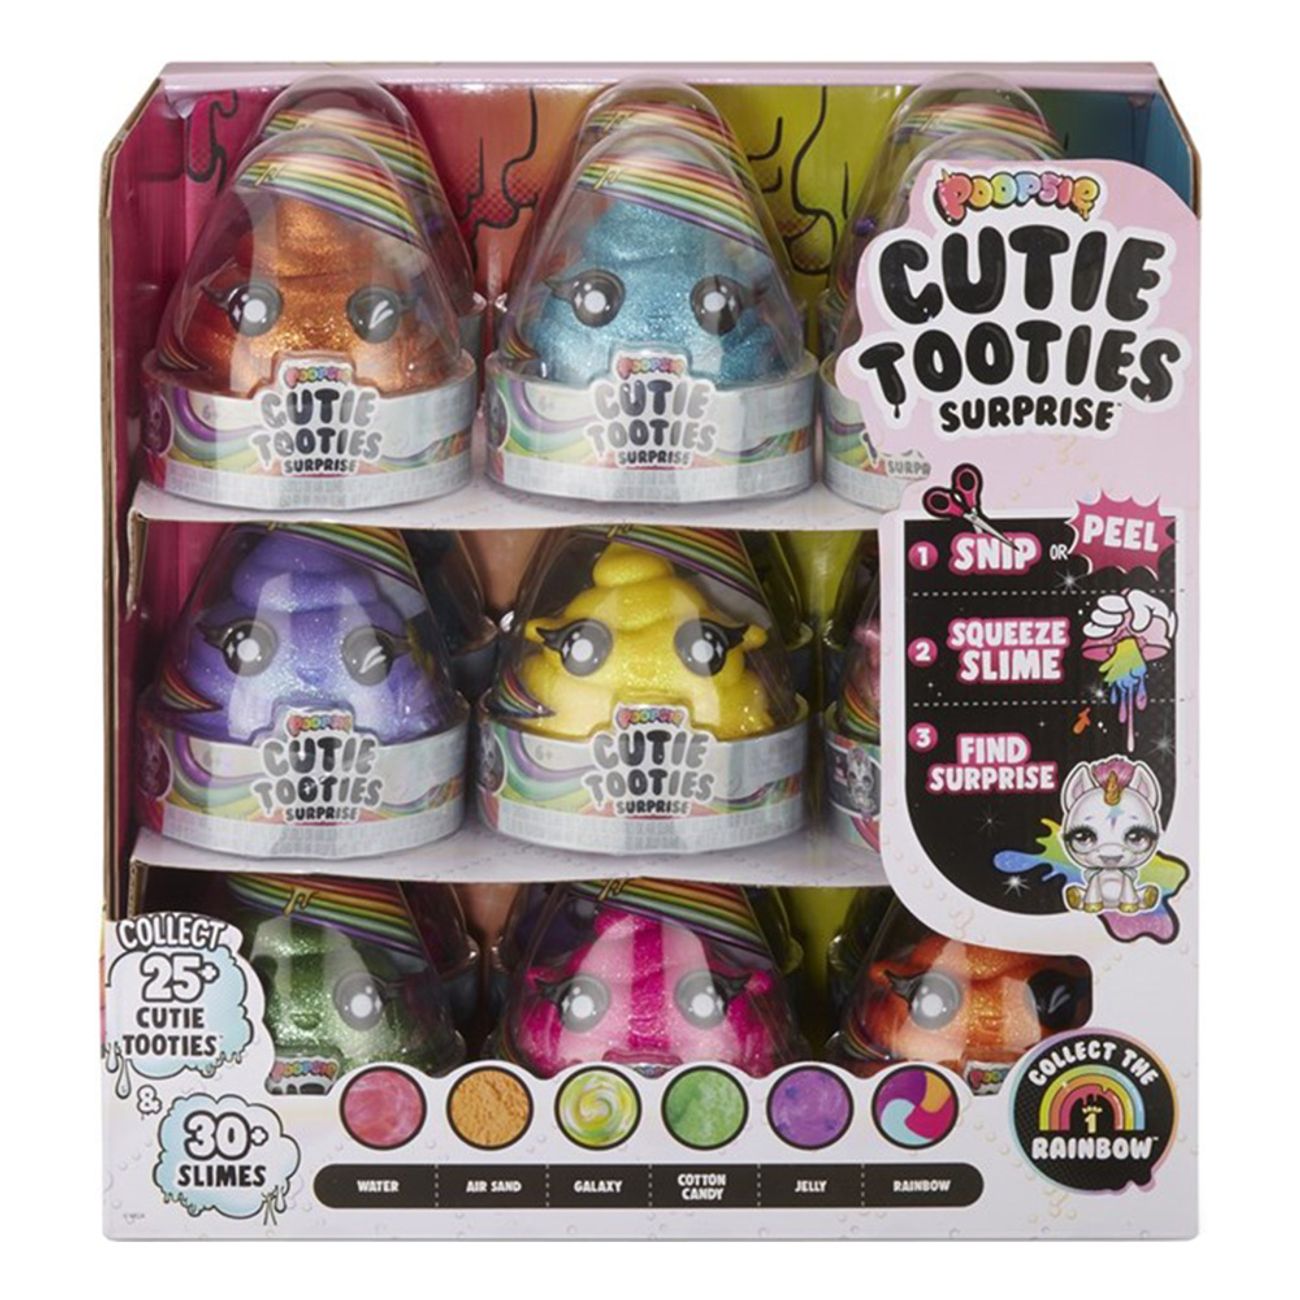 cutie-tooties-surprise-1